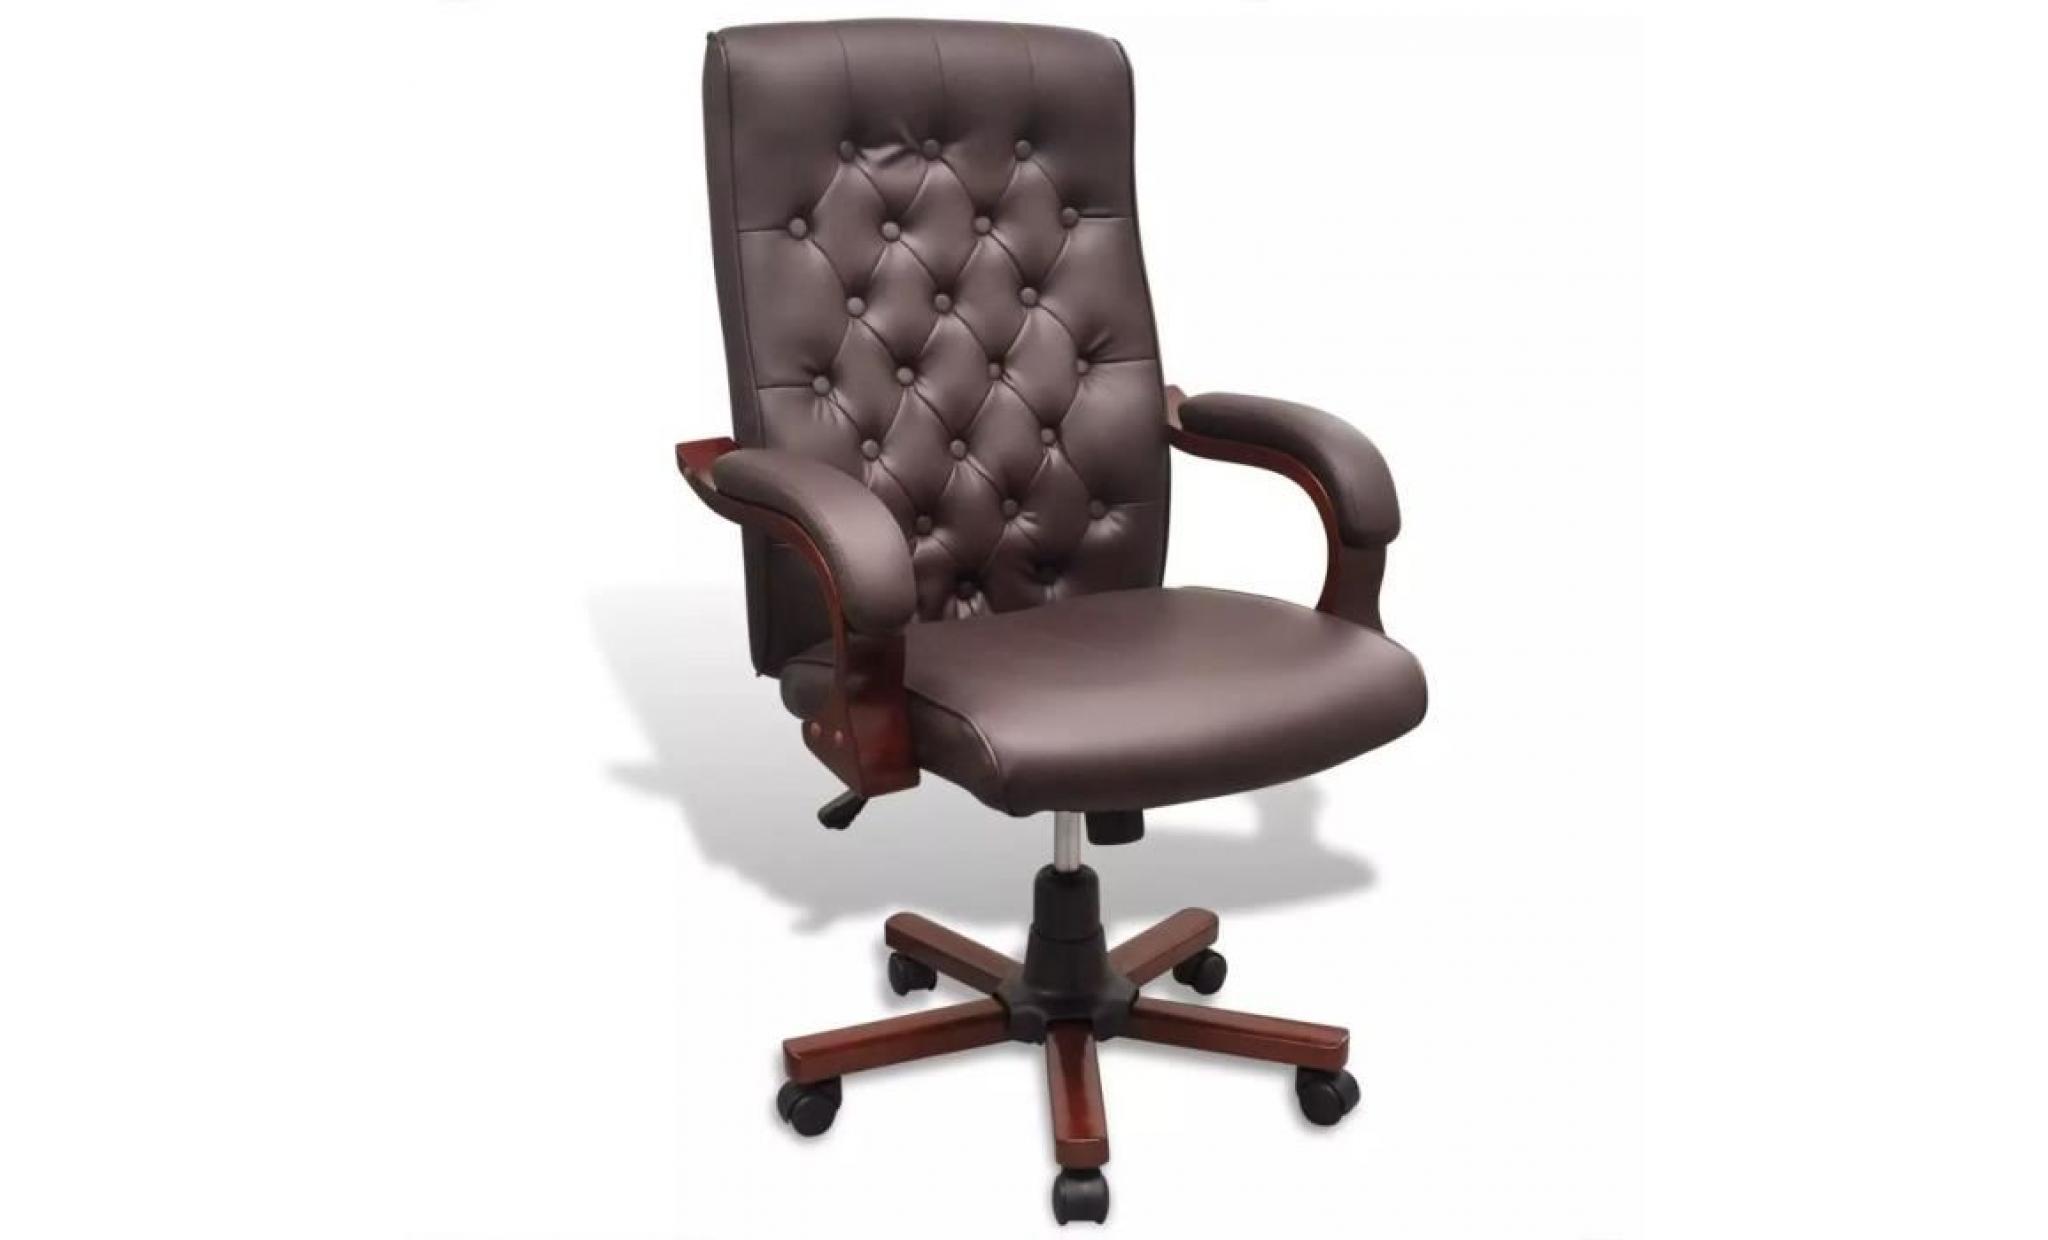 fauteuil de bureau64 x 67 x (104   114) cmchaise de bureau, siège de bureau pivotante sur roulette chaise d‘ordinateur chesterfield